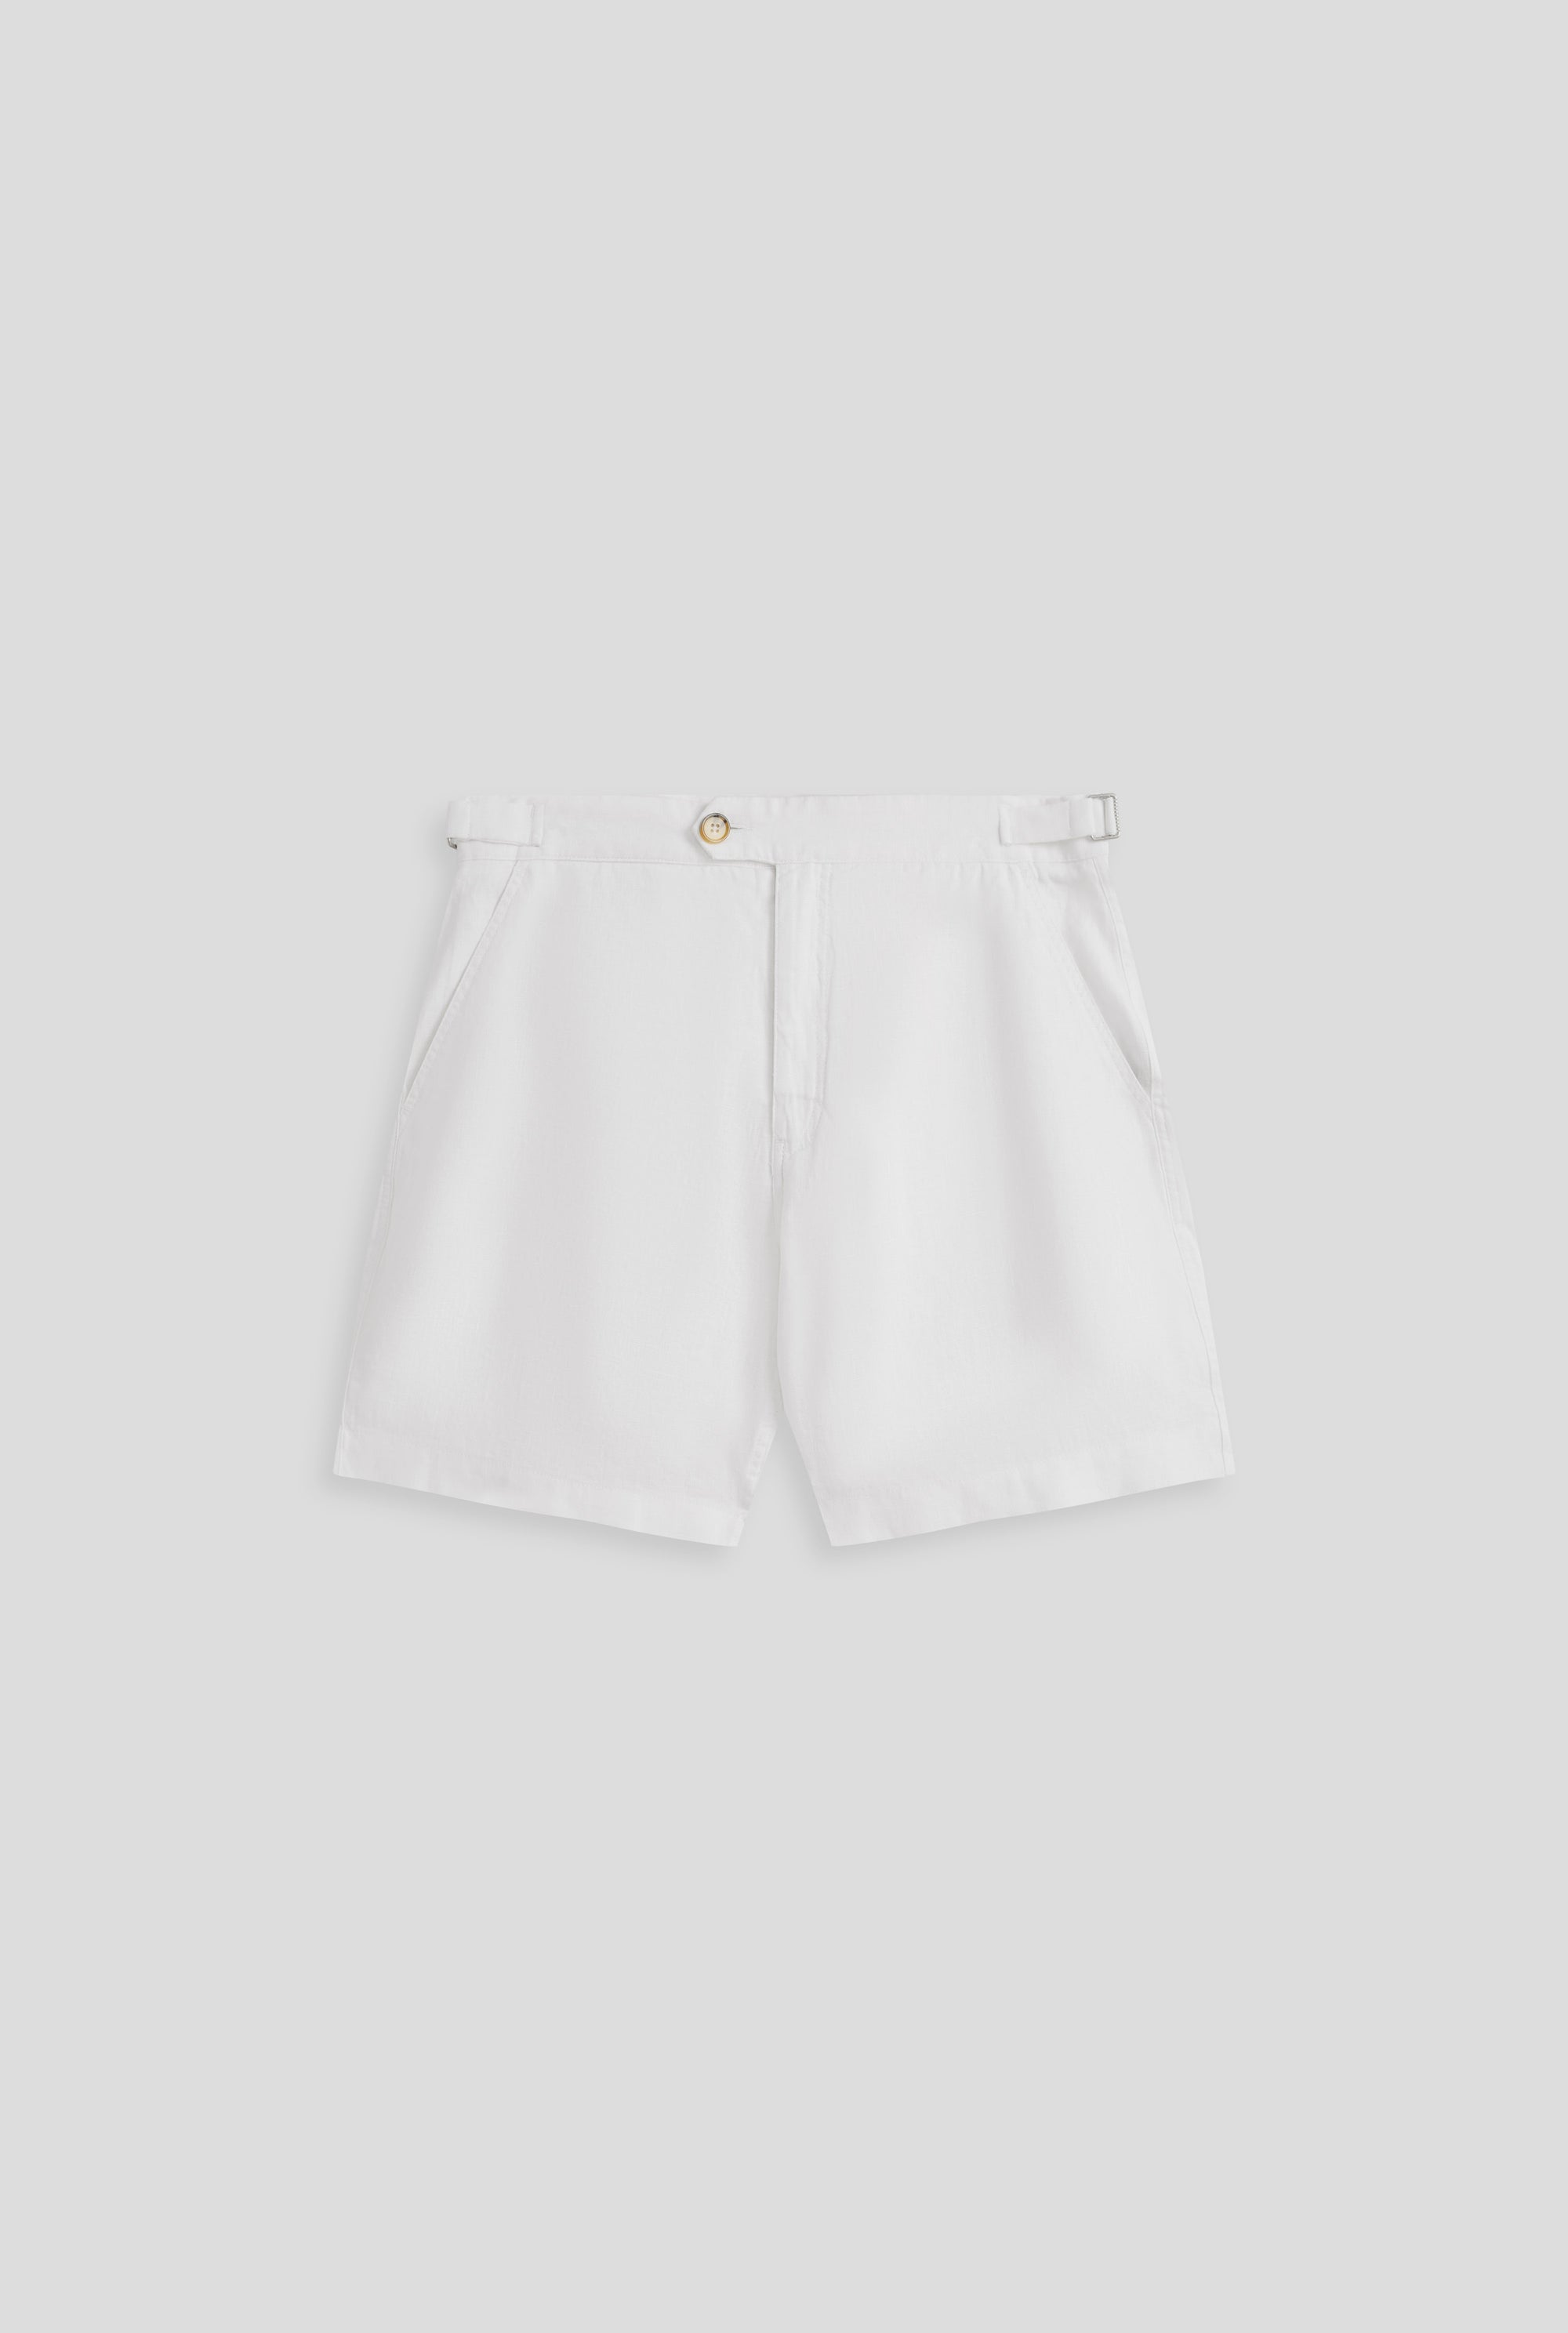 Side Tab Short - White | Venroy | Premium Leisurewear designed in Australia